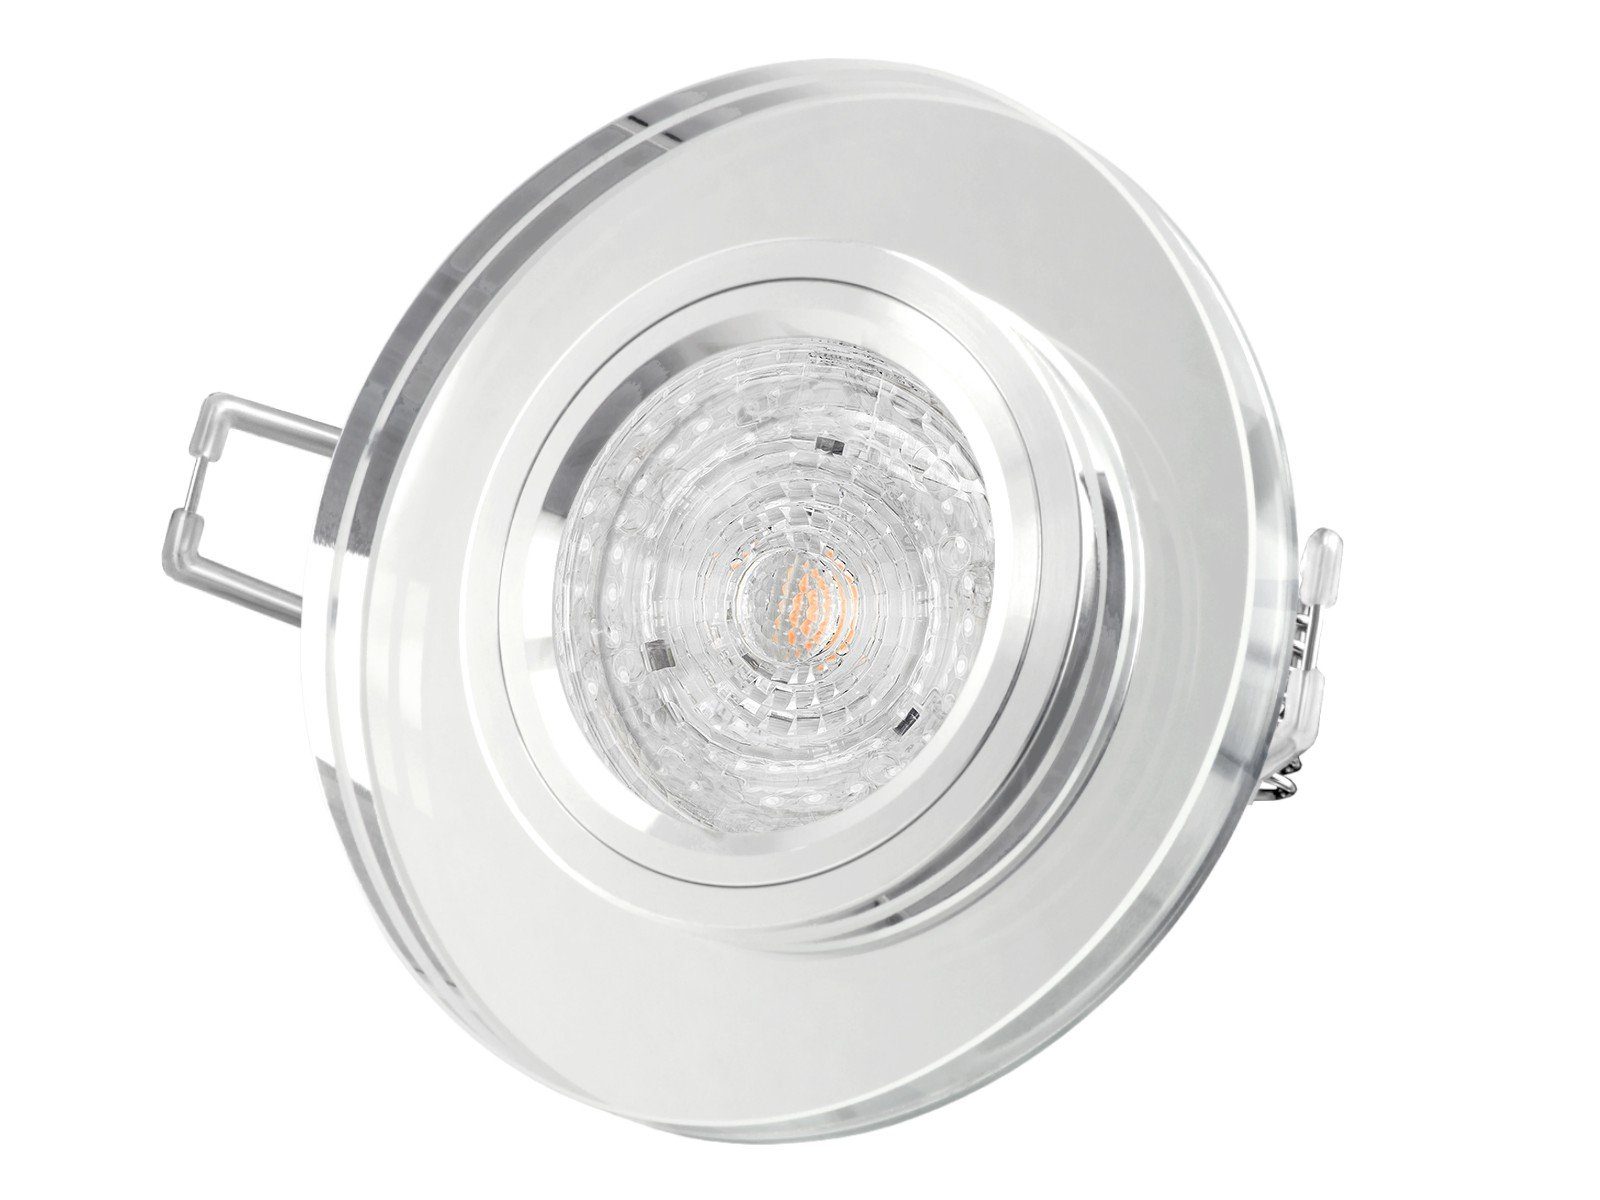 SSC-LUXon LED Einbaustrahler Dimmbarer LED-Einbaustrahler Echtglas rund, klar spiegelnd, 4,9W, Warmweiß